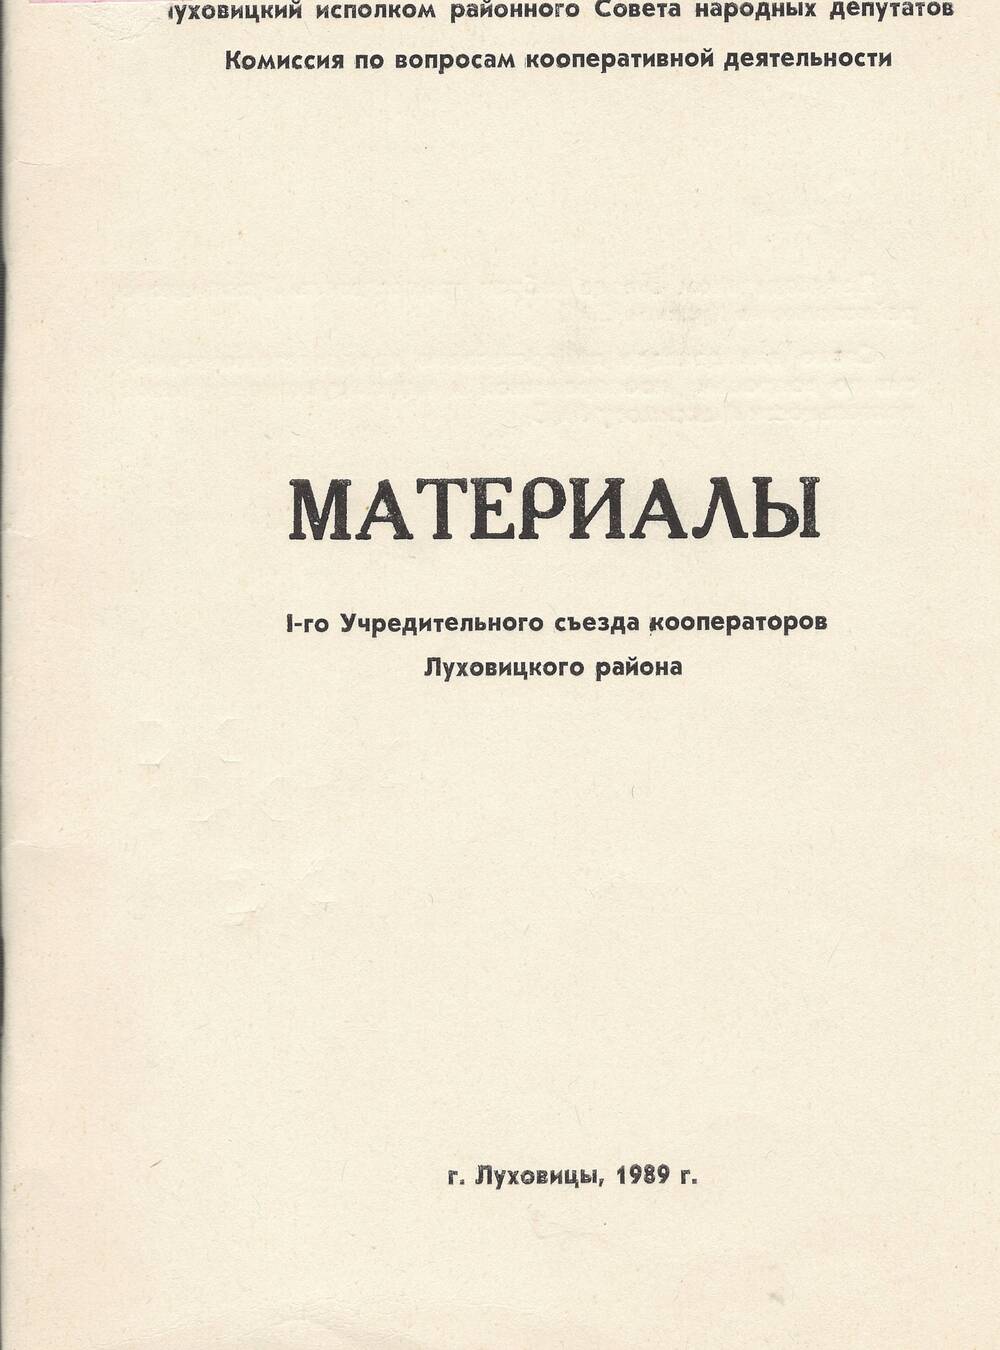 Материалы съезда кооператоров,1989 г.